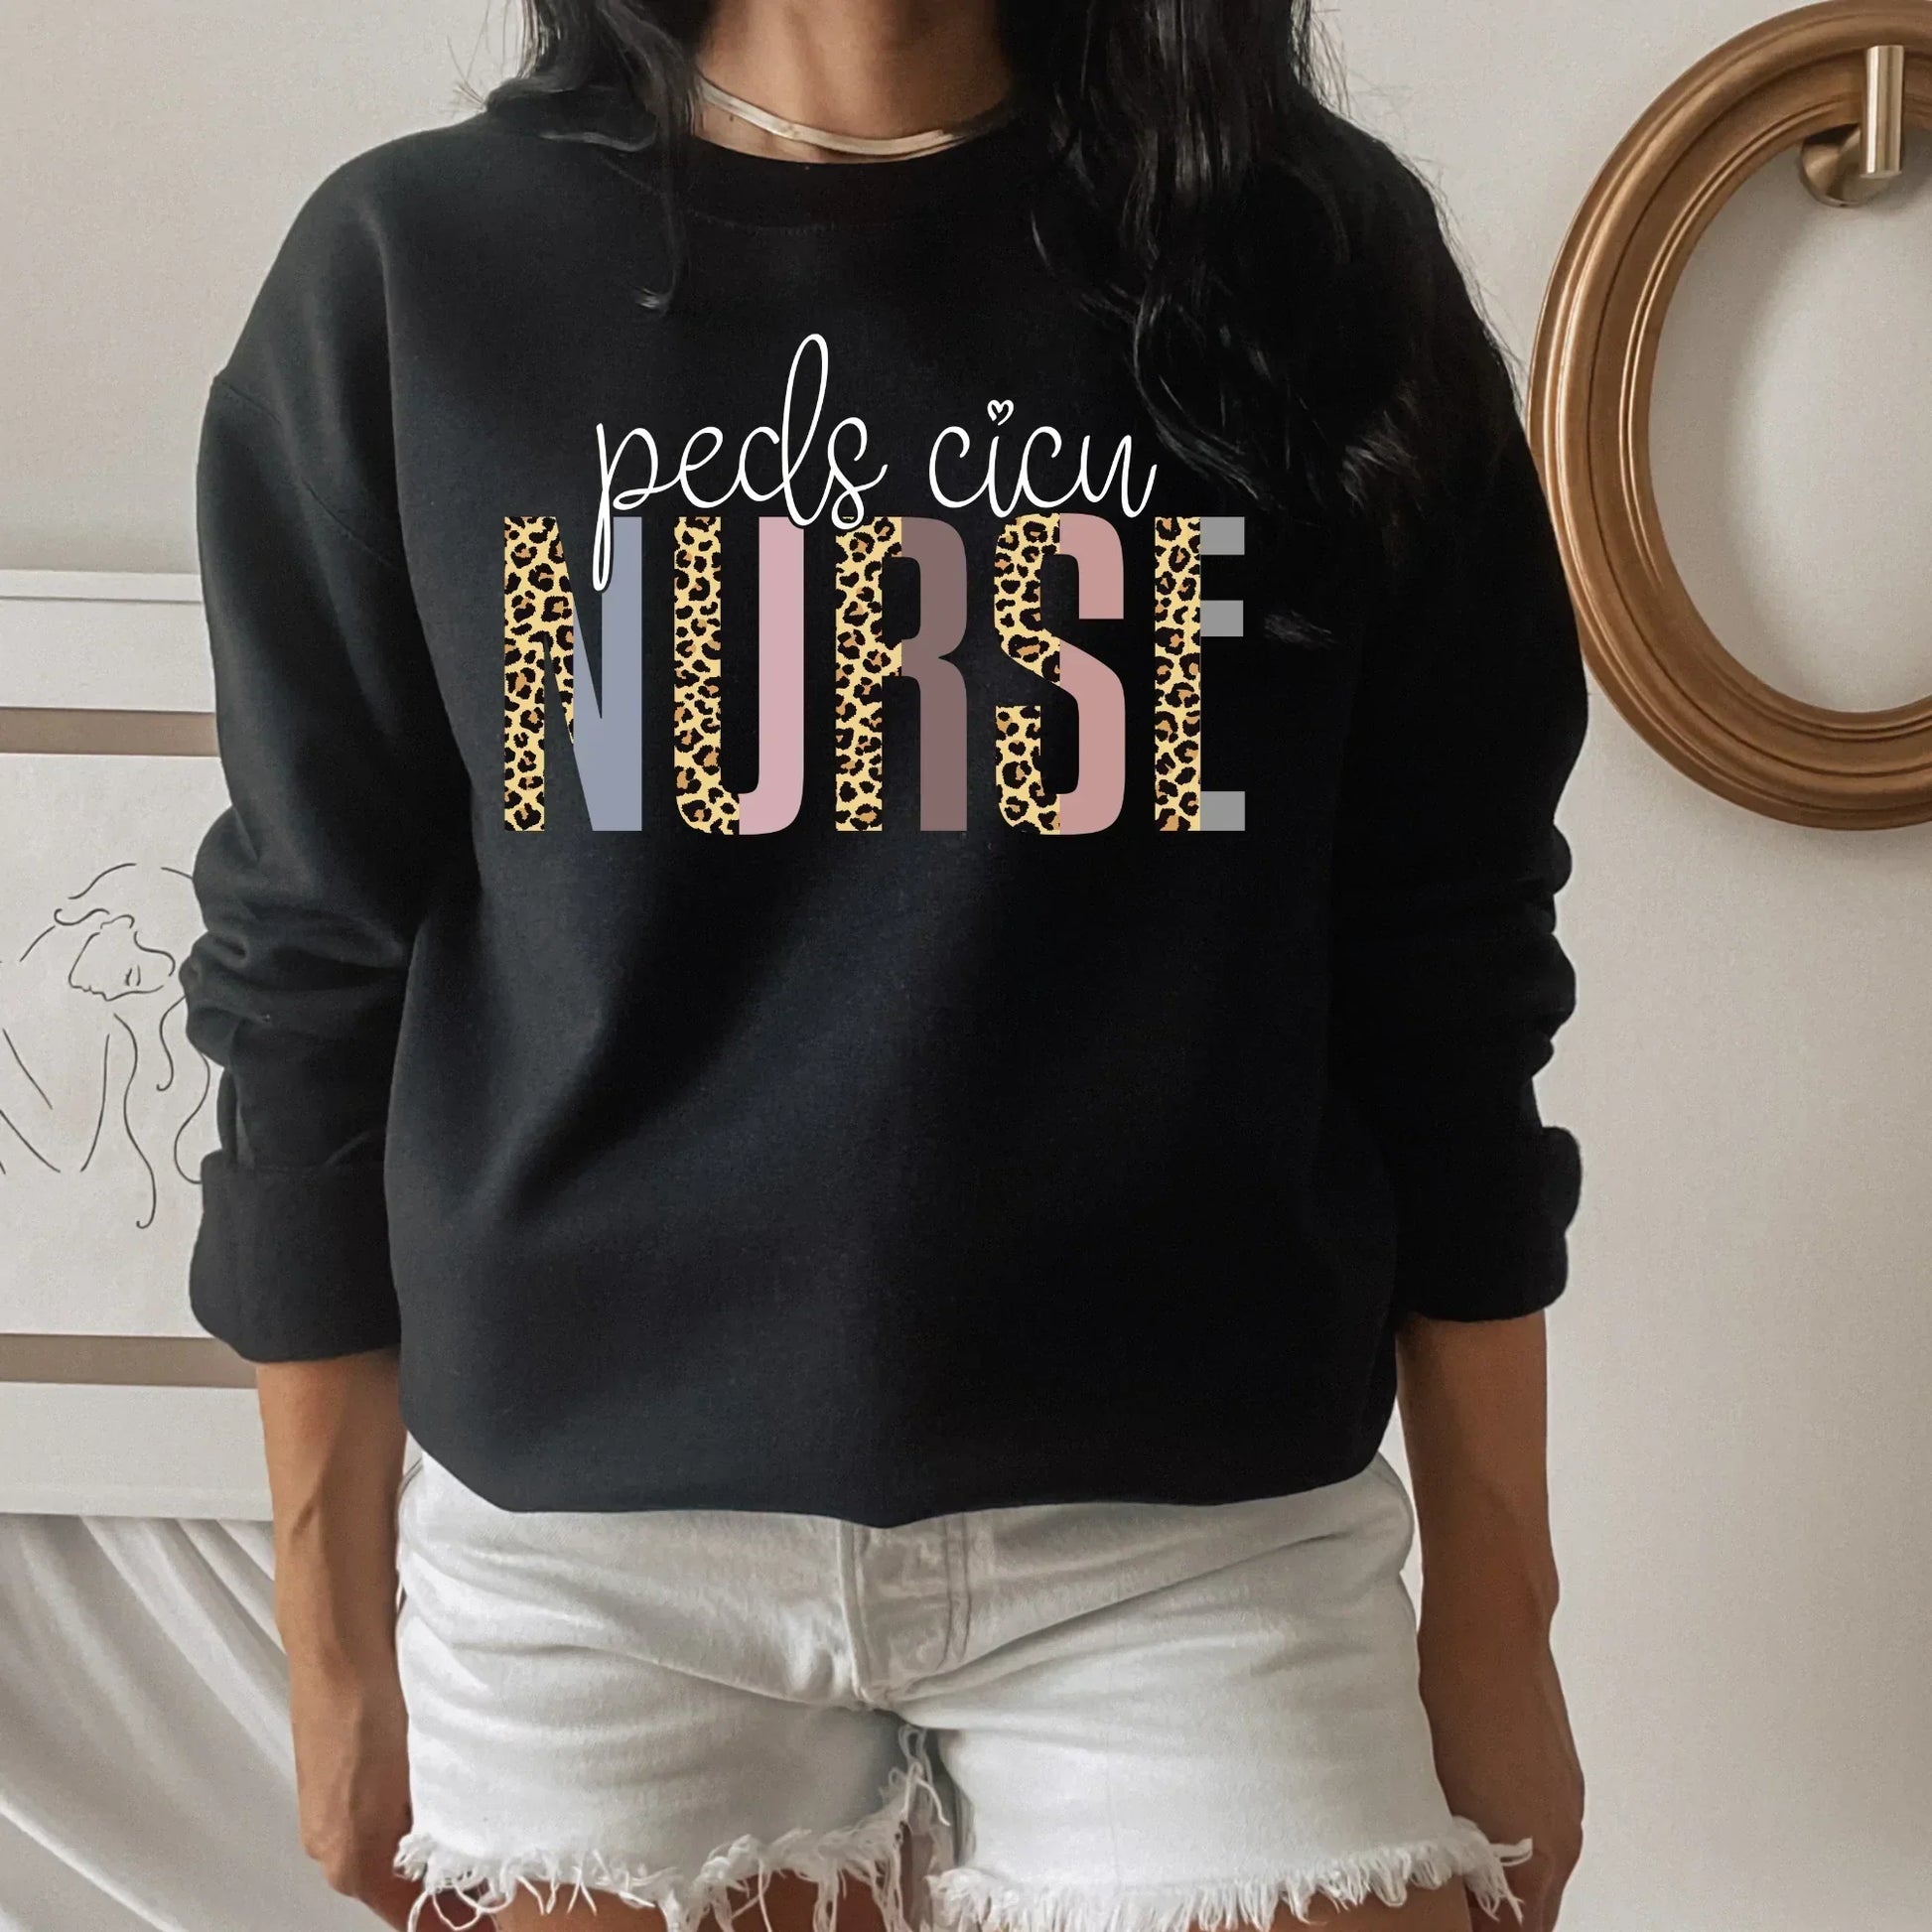 Pediatric Nurse Shirt, Peds Cicu Nurse, Pediatric Intensive Care Unit, Registered Nurse Shirt, Nurse practitioner Appreciation Gift, Nurse Life